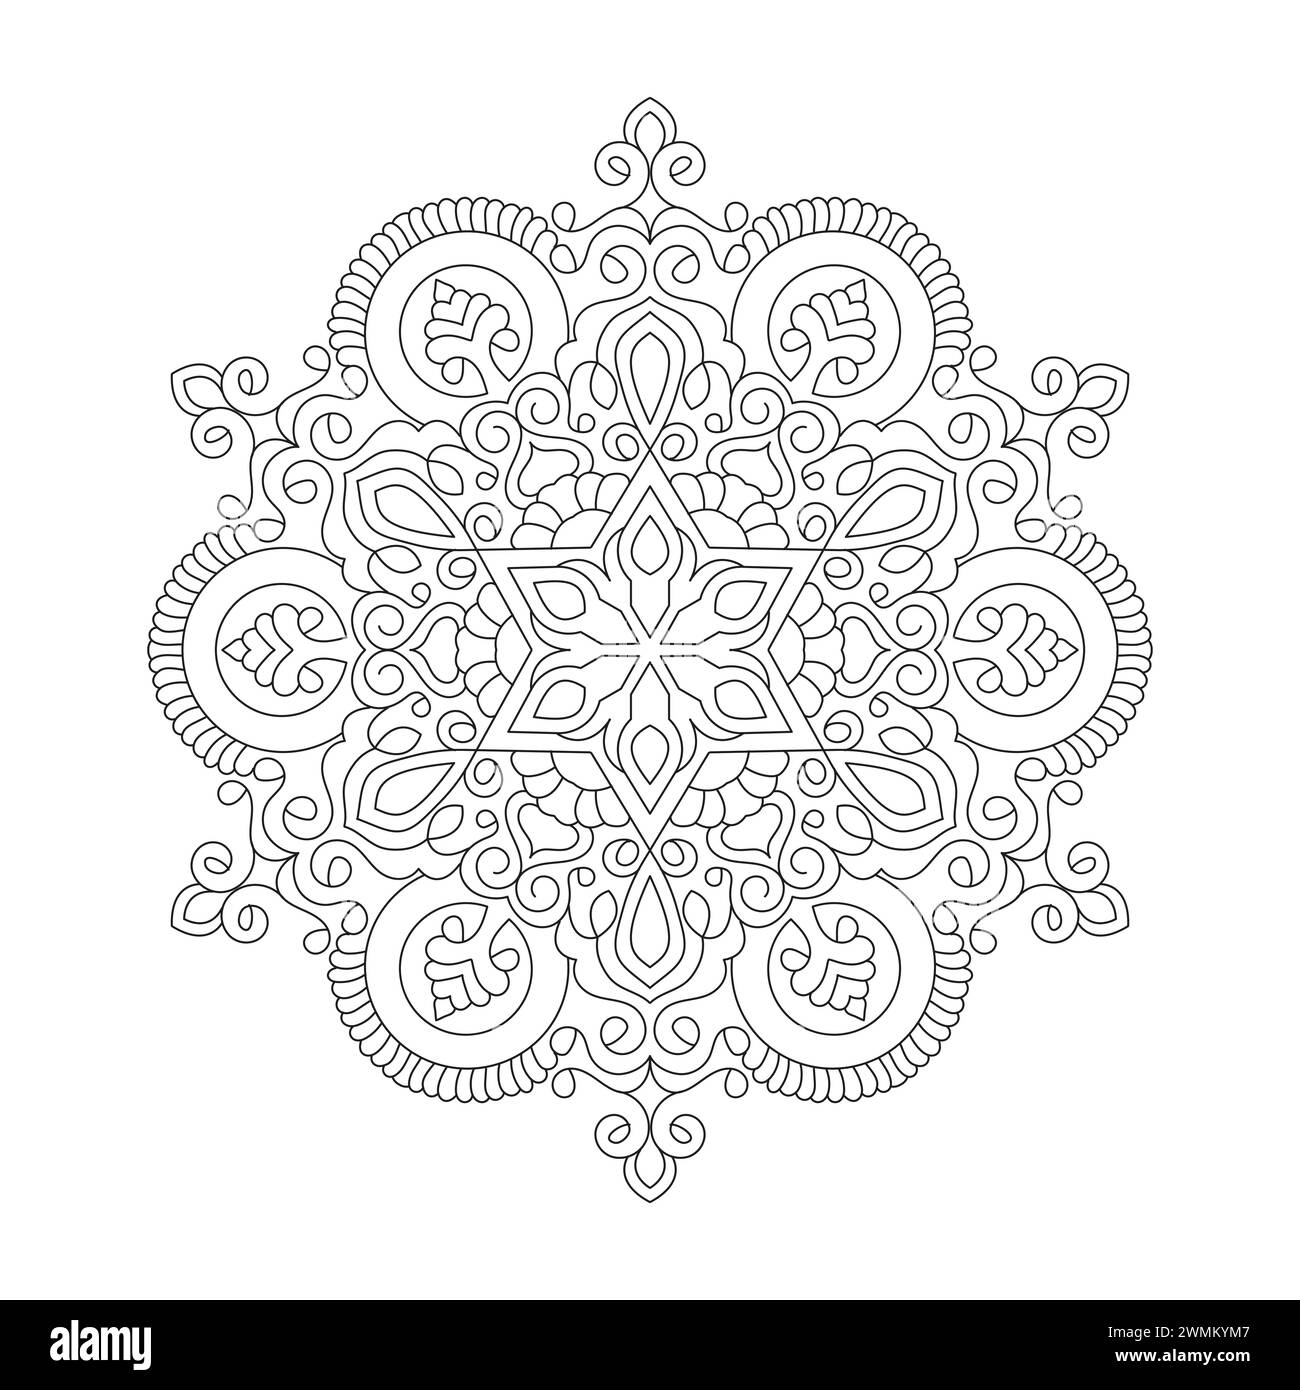 Simplicity Mystical Mandala Coloring Book Page für kdp Book Interior. Friedliche Blütenblätter, Fähigkeit zum Entspannen, Gehirnerlebnisse, harmonischer Hafen, friedlich Stock Vektor